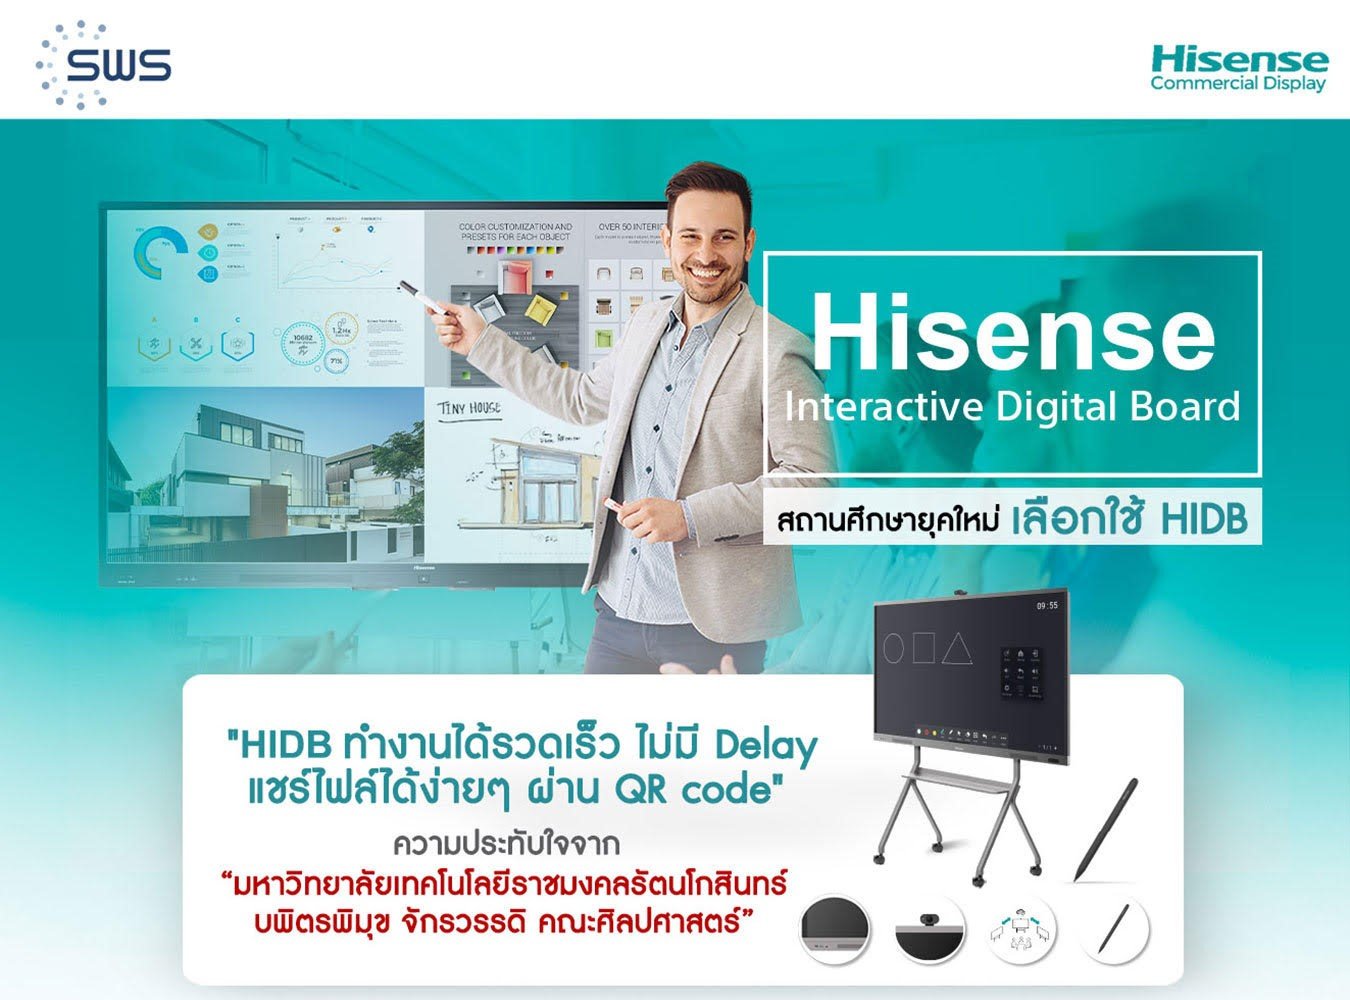 สถานศึกษายุคใหม่ เลือกใช้ Hisense Interactive Digital Board